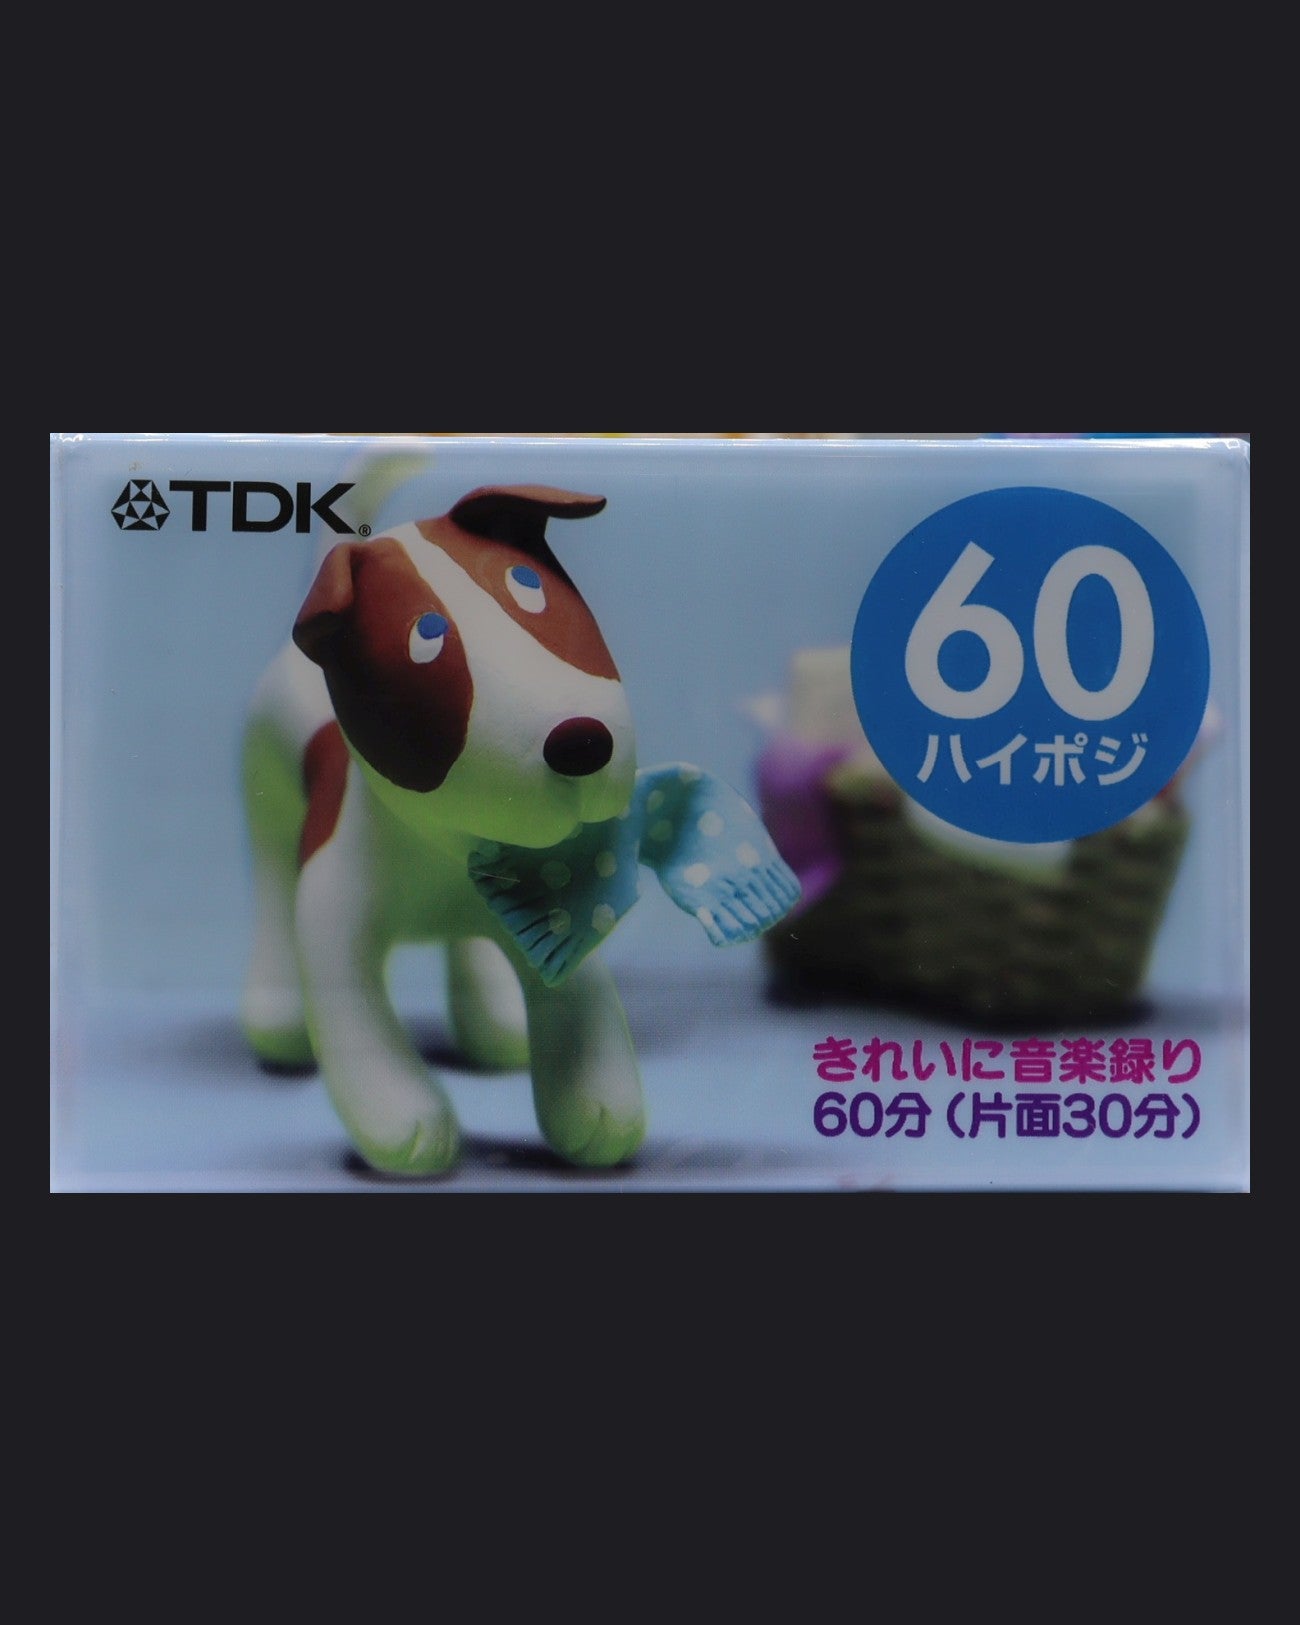 TDK DS2 Pet Series (2002-2005 JP) Ultra Ferric